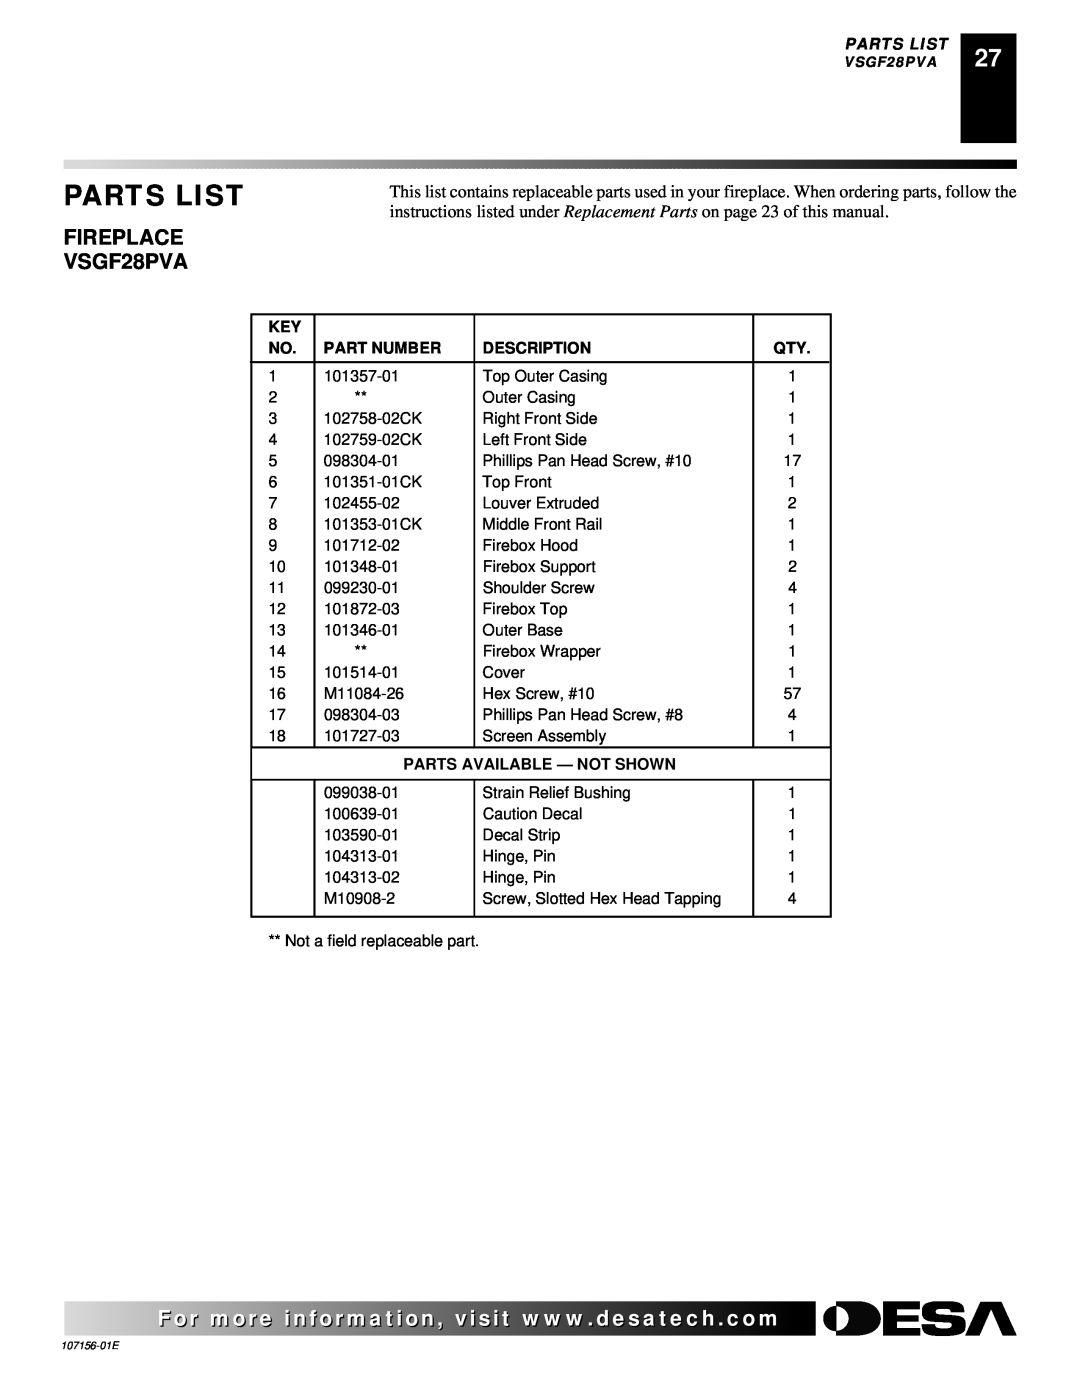 Vanguard Heating 107156-01E.pdf FIREPLACE VSGF28PVA, Parts List, Part Number, Description, Parts Available - Not Shown 